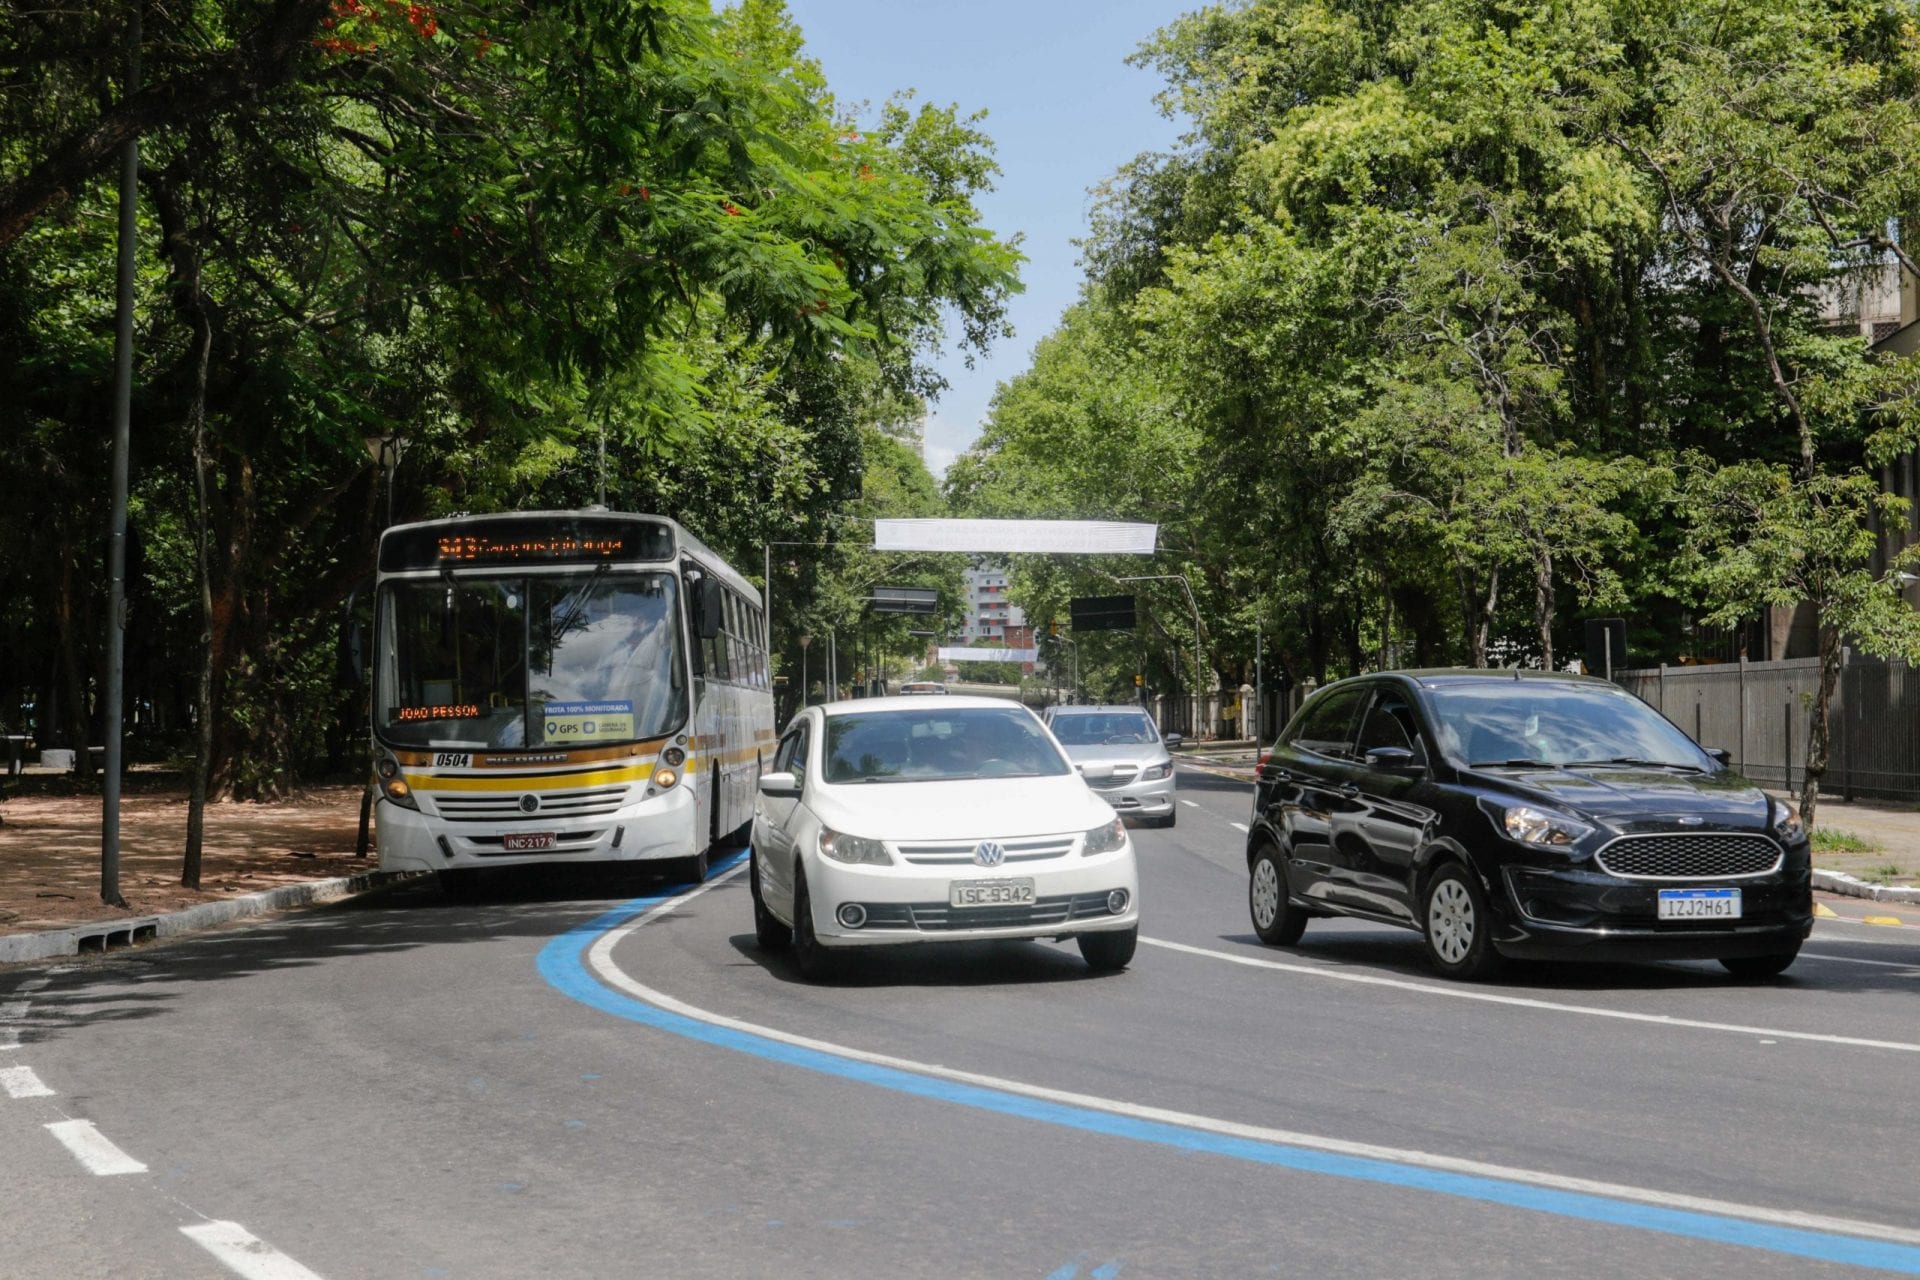 Municípios da Região Metropolitana emitem nota sobre proposta de pedágio para veículos entrarem em Porto Alegre